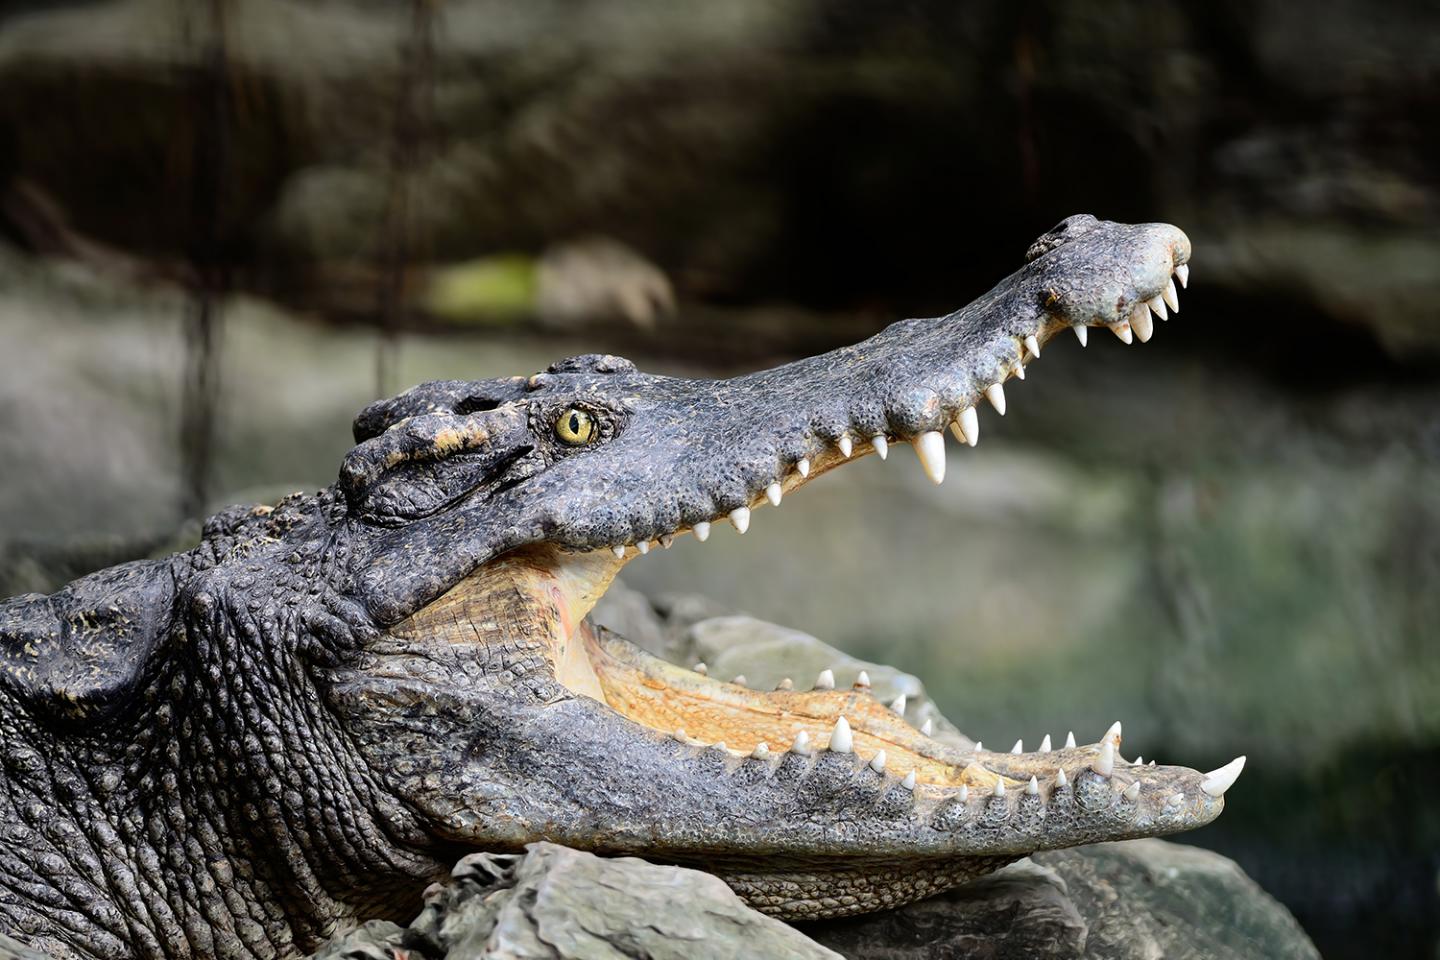 Siamese Crocodile (Crocodylus siamensis)